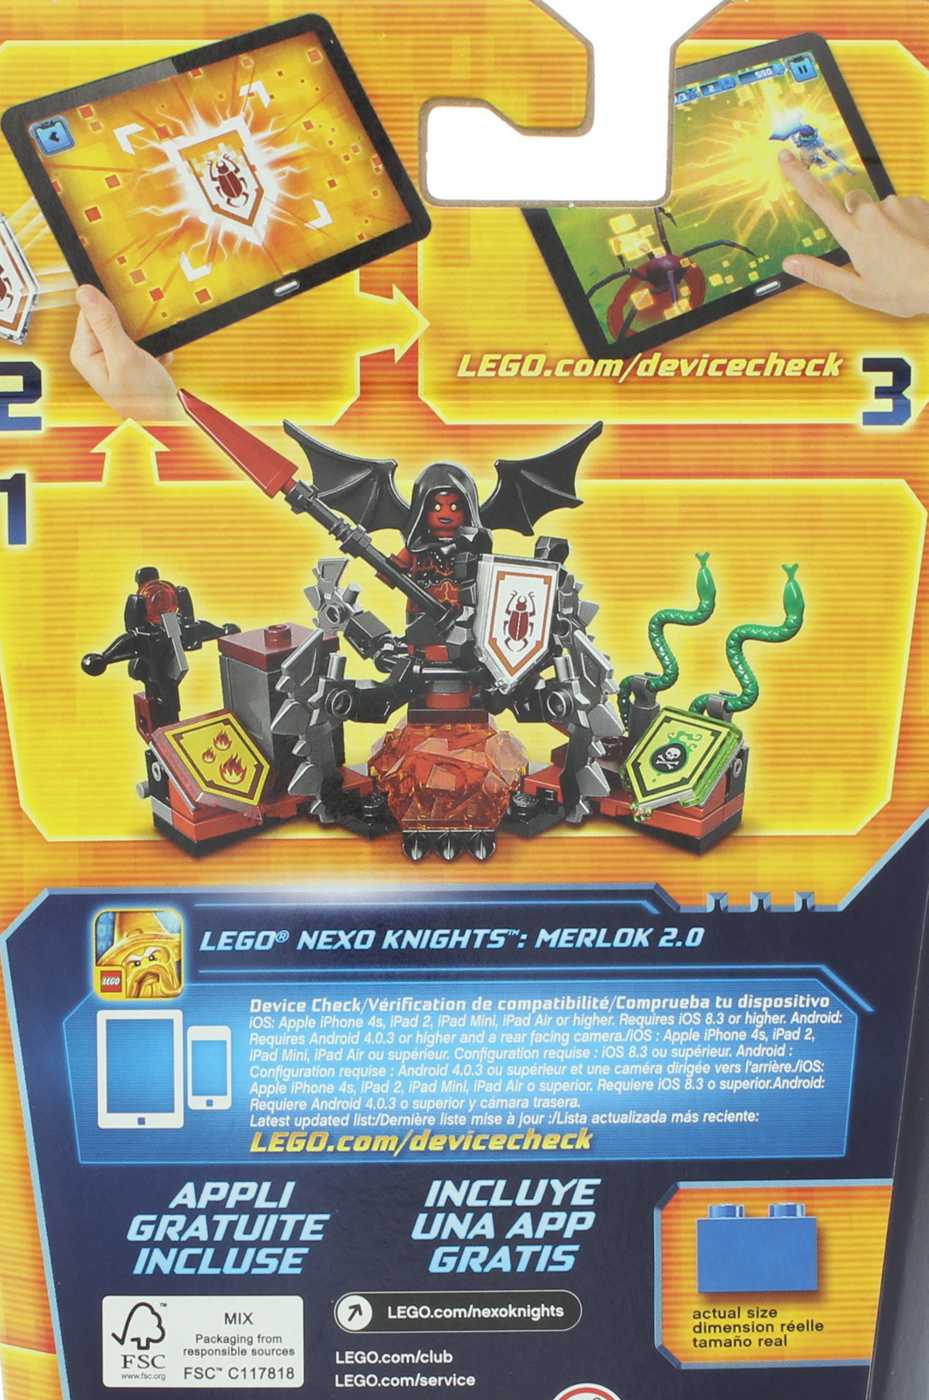 LEGO Nexo Knights Lavaria; image 2 of 2